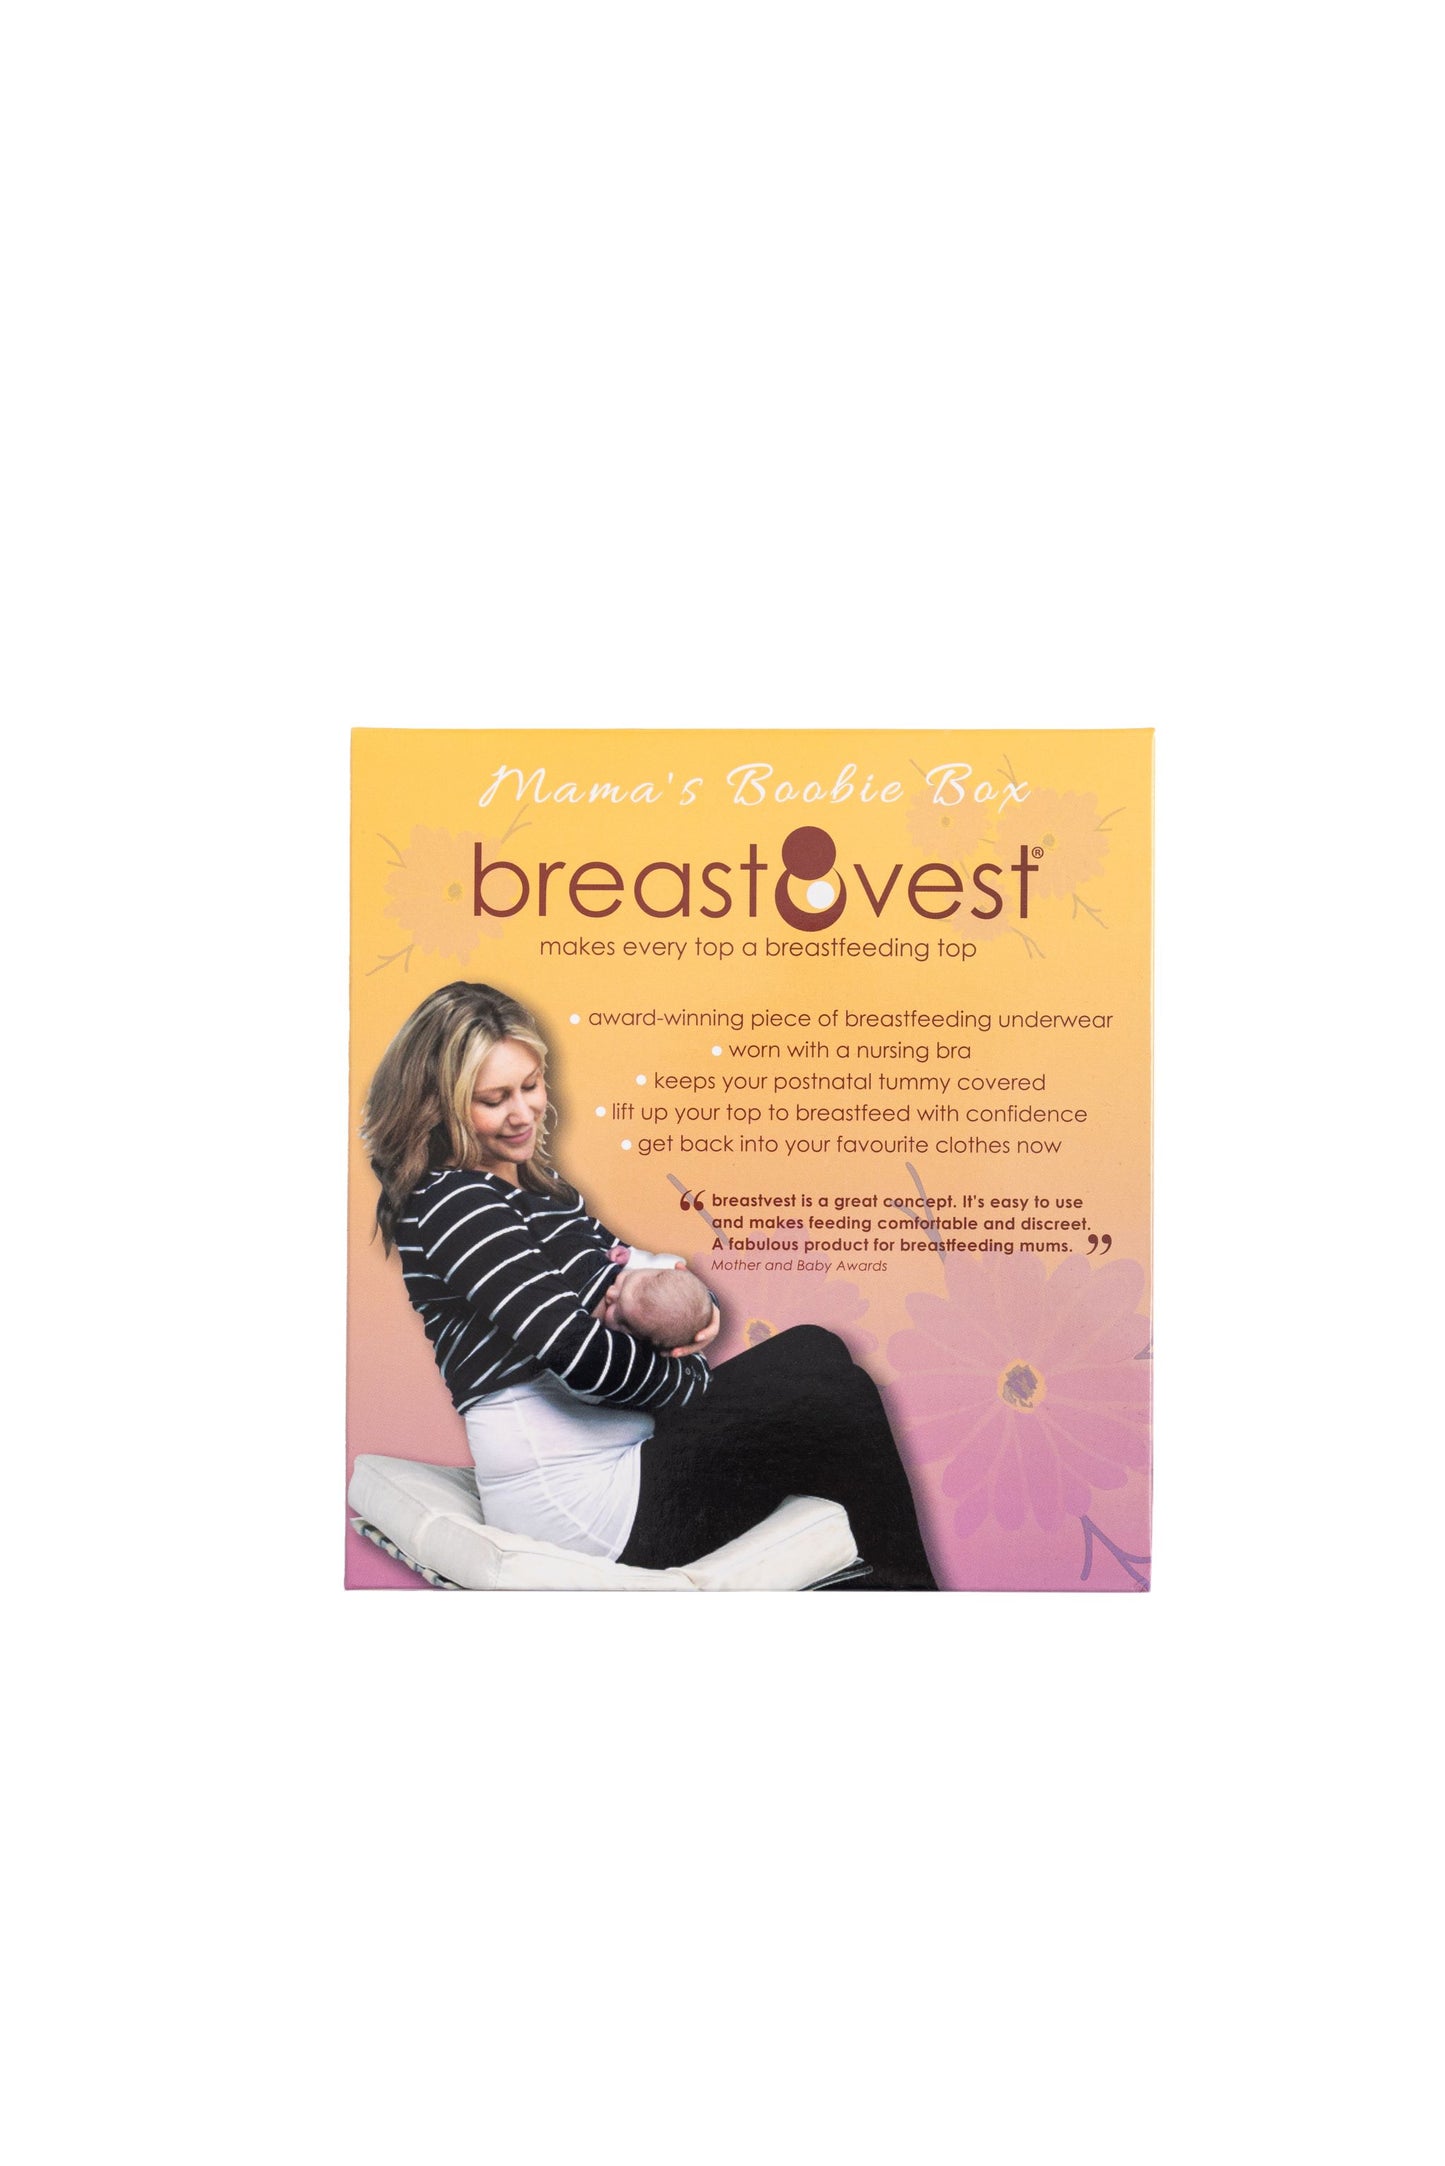 Breast Vest in packaging